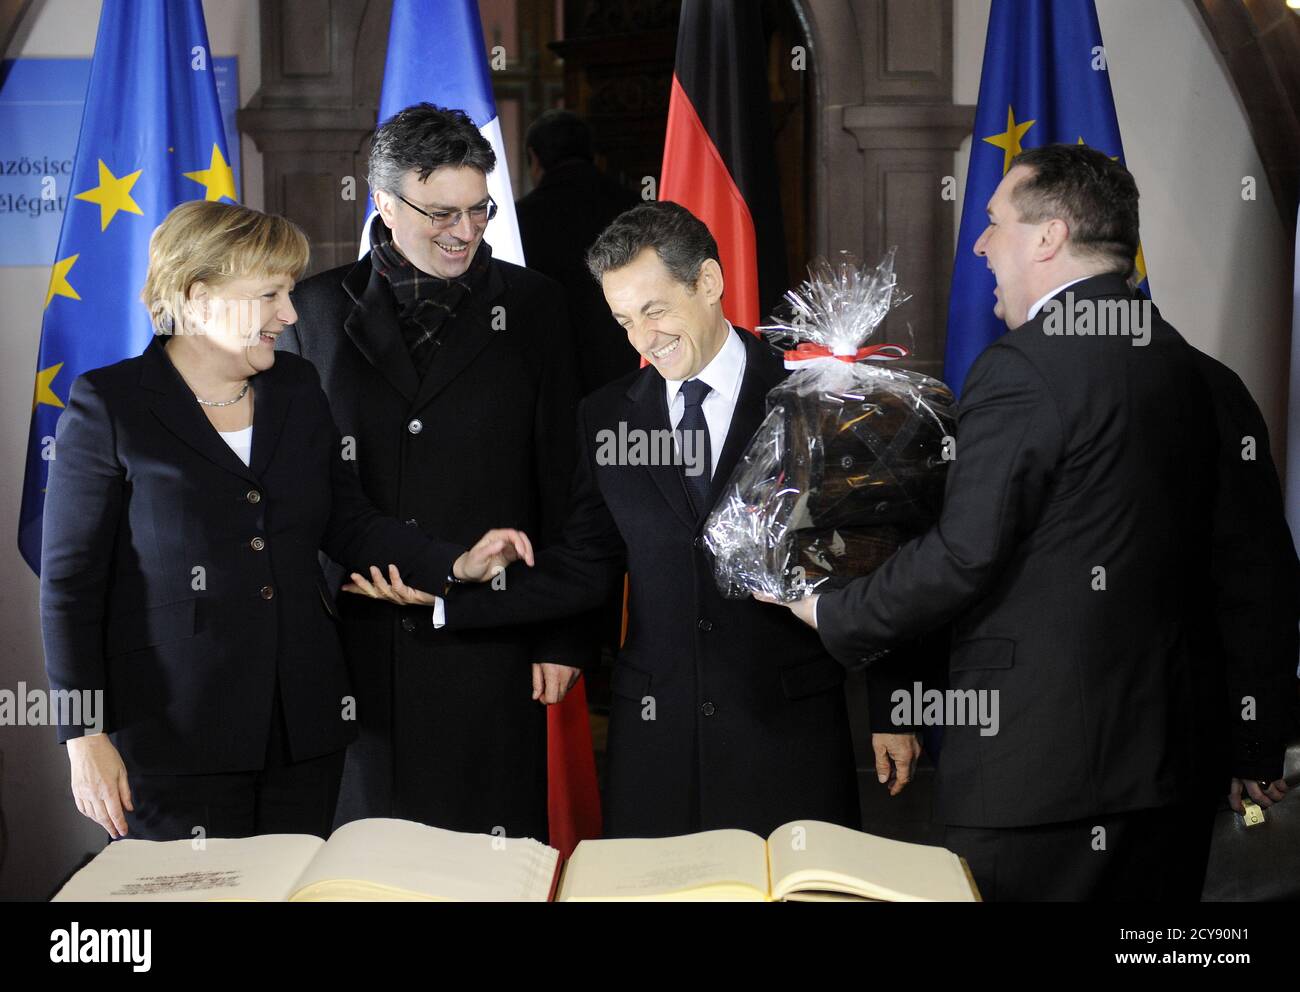 Freiburger Bürgermeister Dieter Salomon (2. L) und Bundeskanzlerin Angela  Merkel sehen zu, wie Baden-Württembergs Ministerpräsident Stefan Mappus (R)  nach der Unterzeichnung des Gästebuch im historischen Rathaus in Freiburg  am 10. Dezember 2010